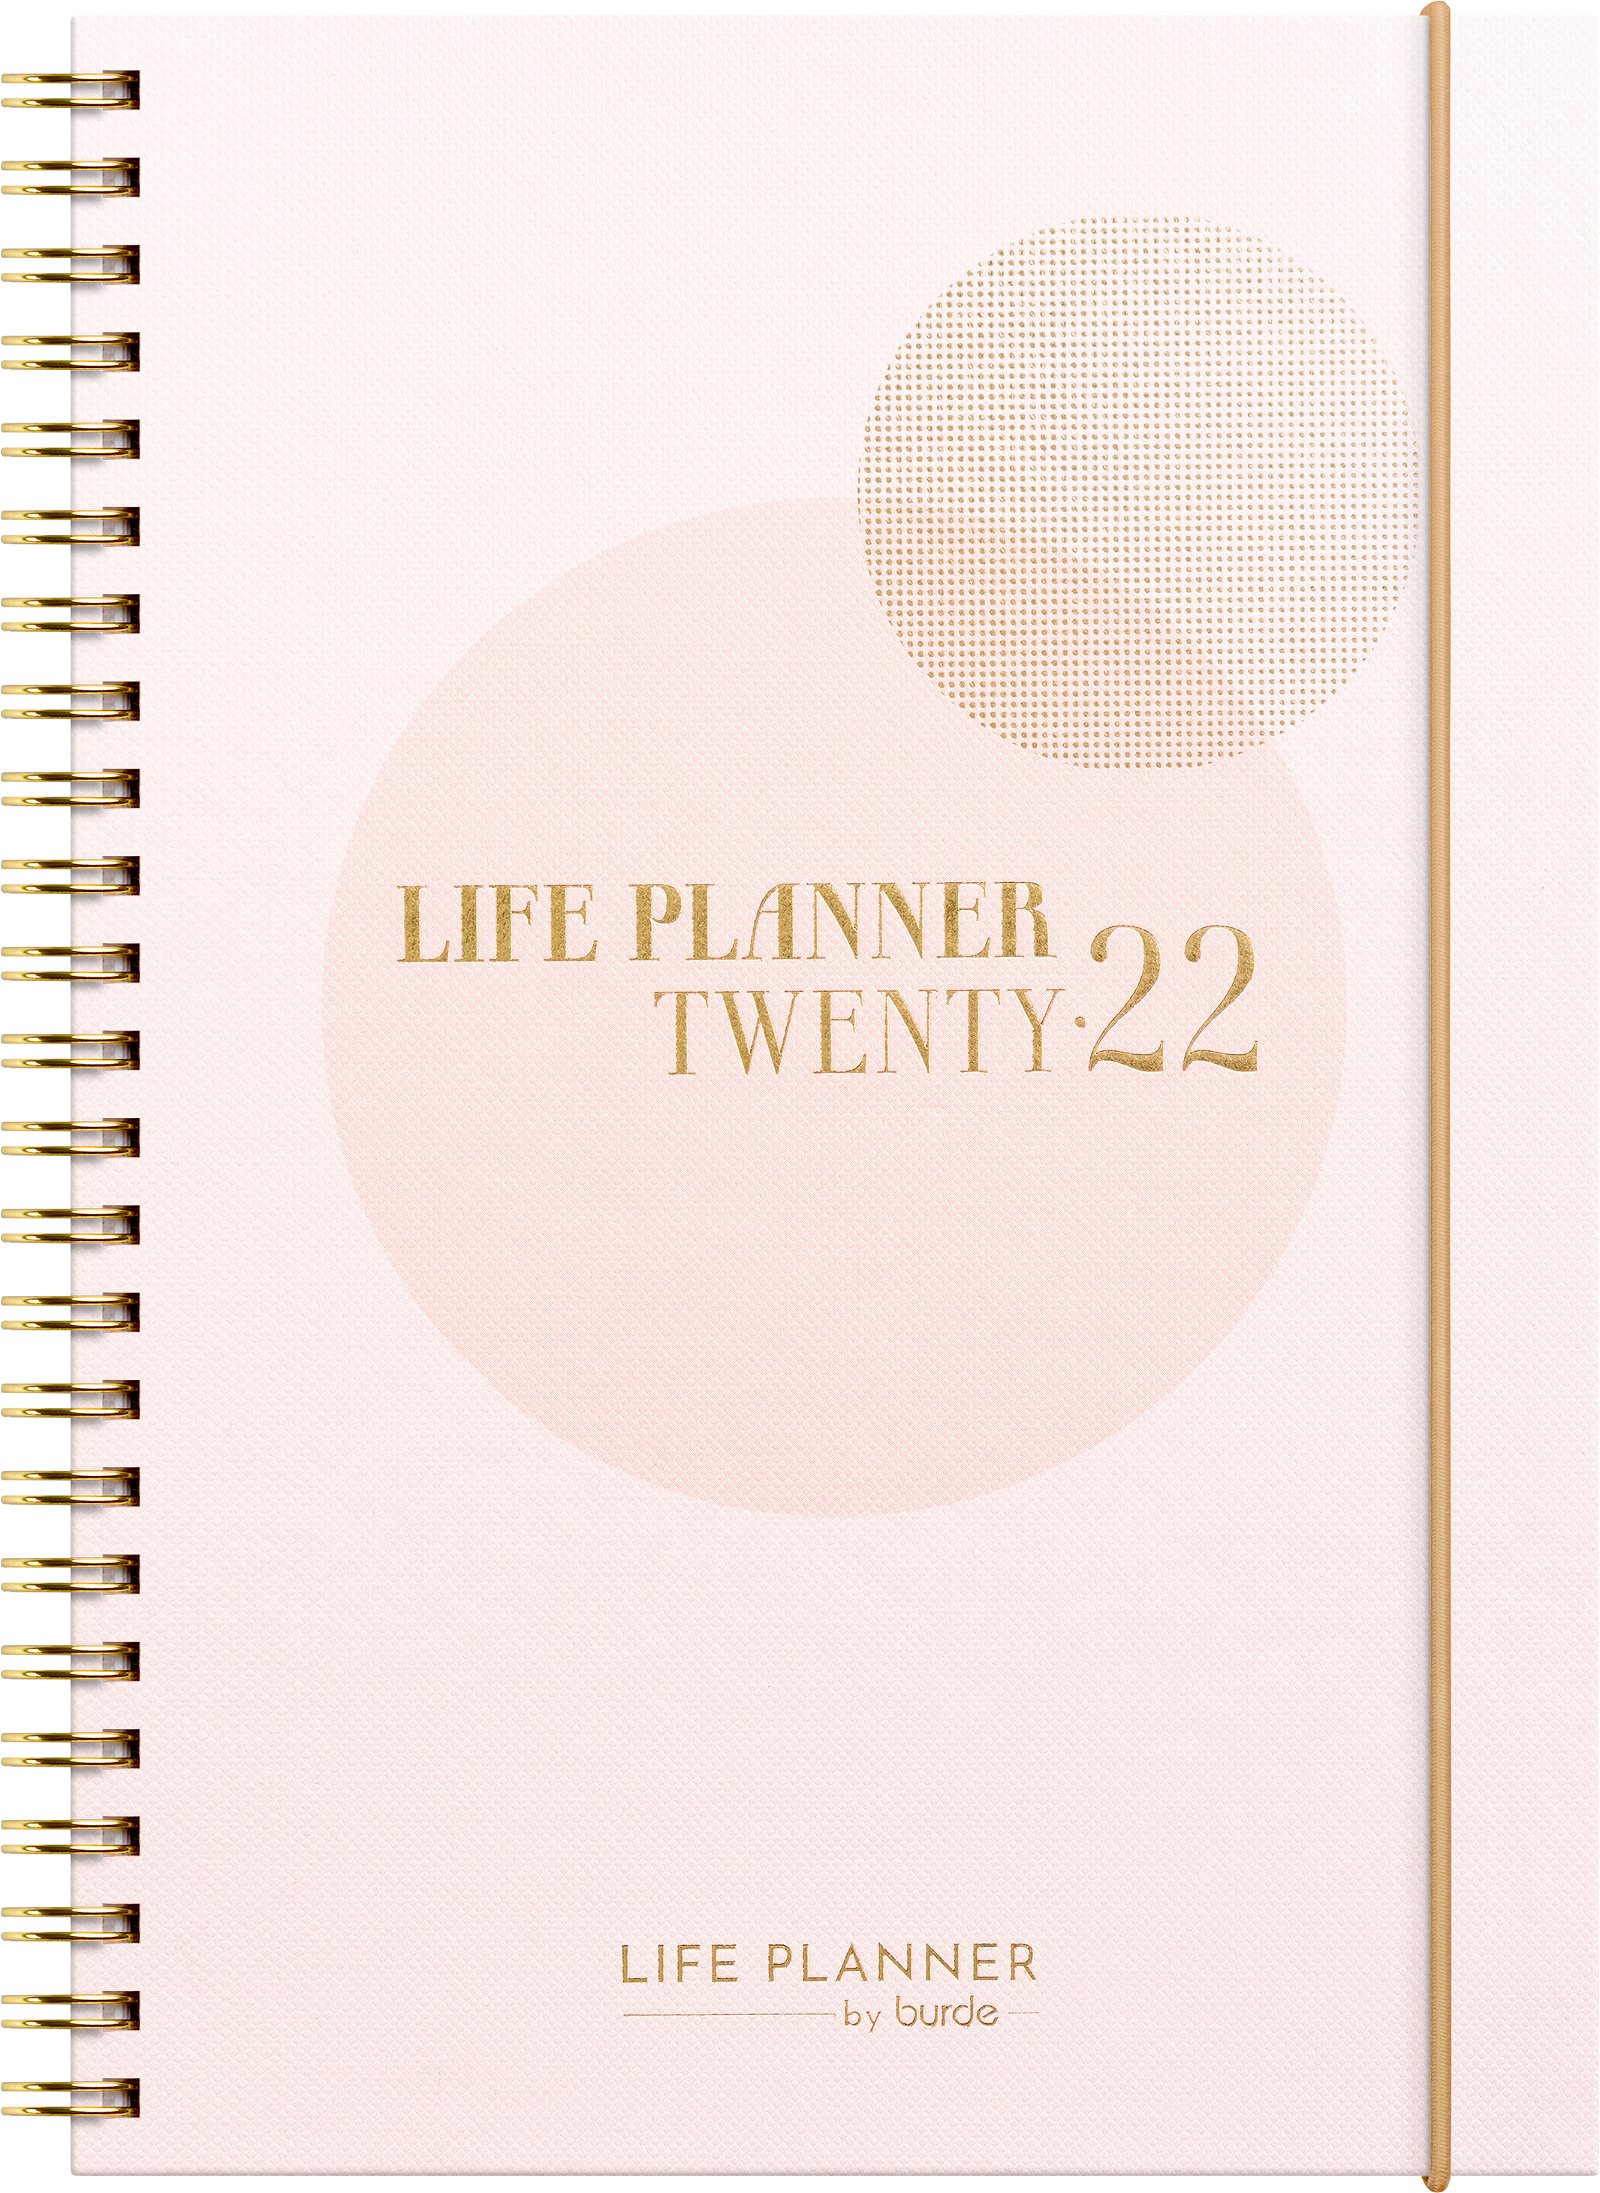 Burde Life Planner 2022